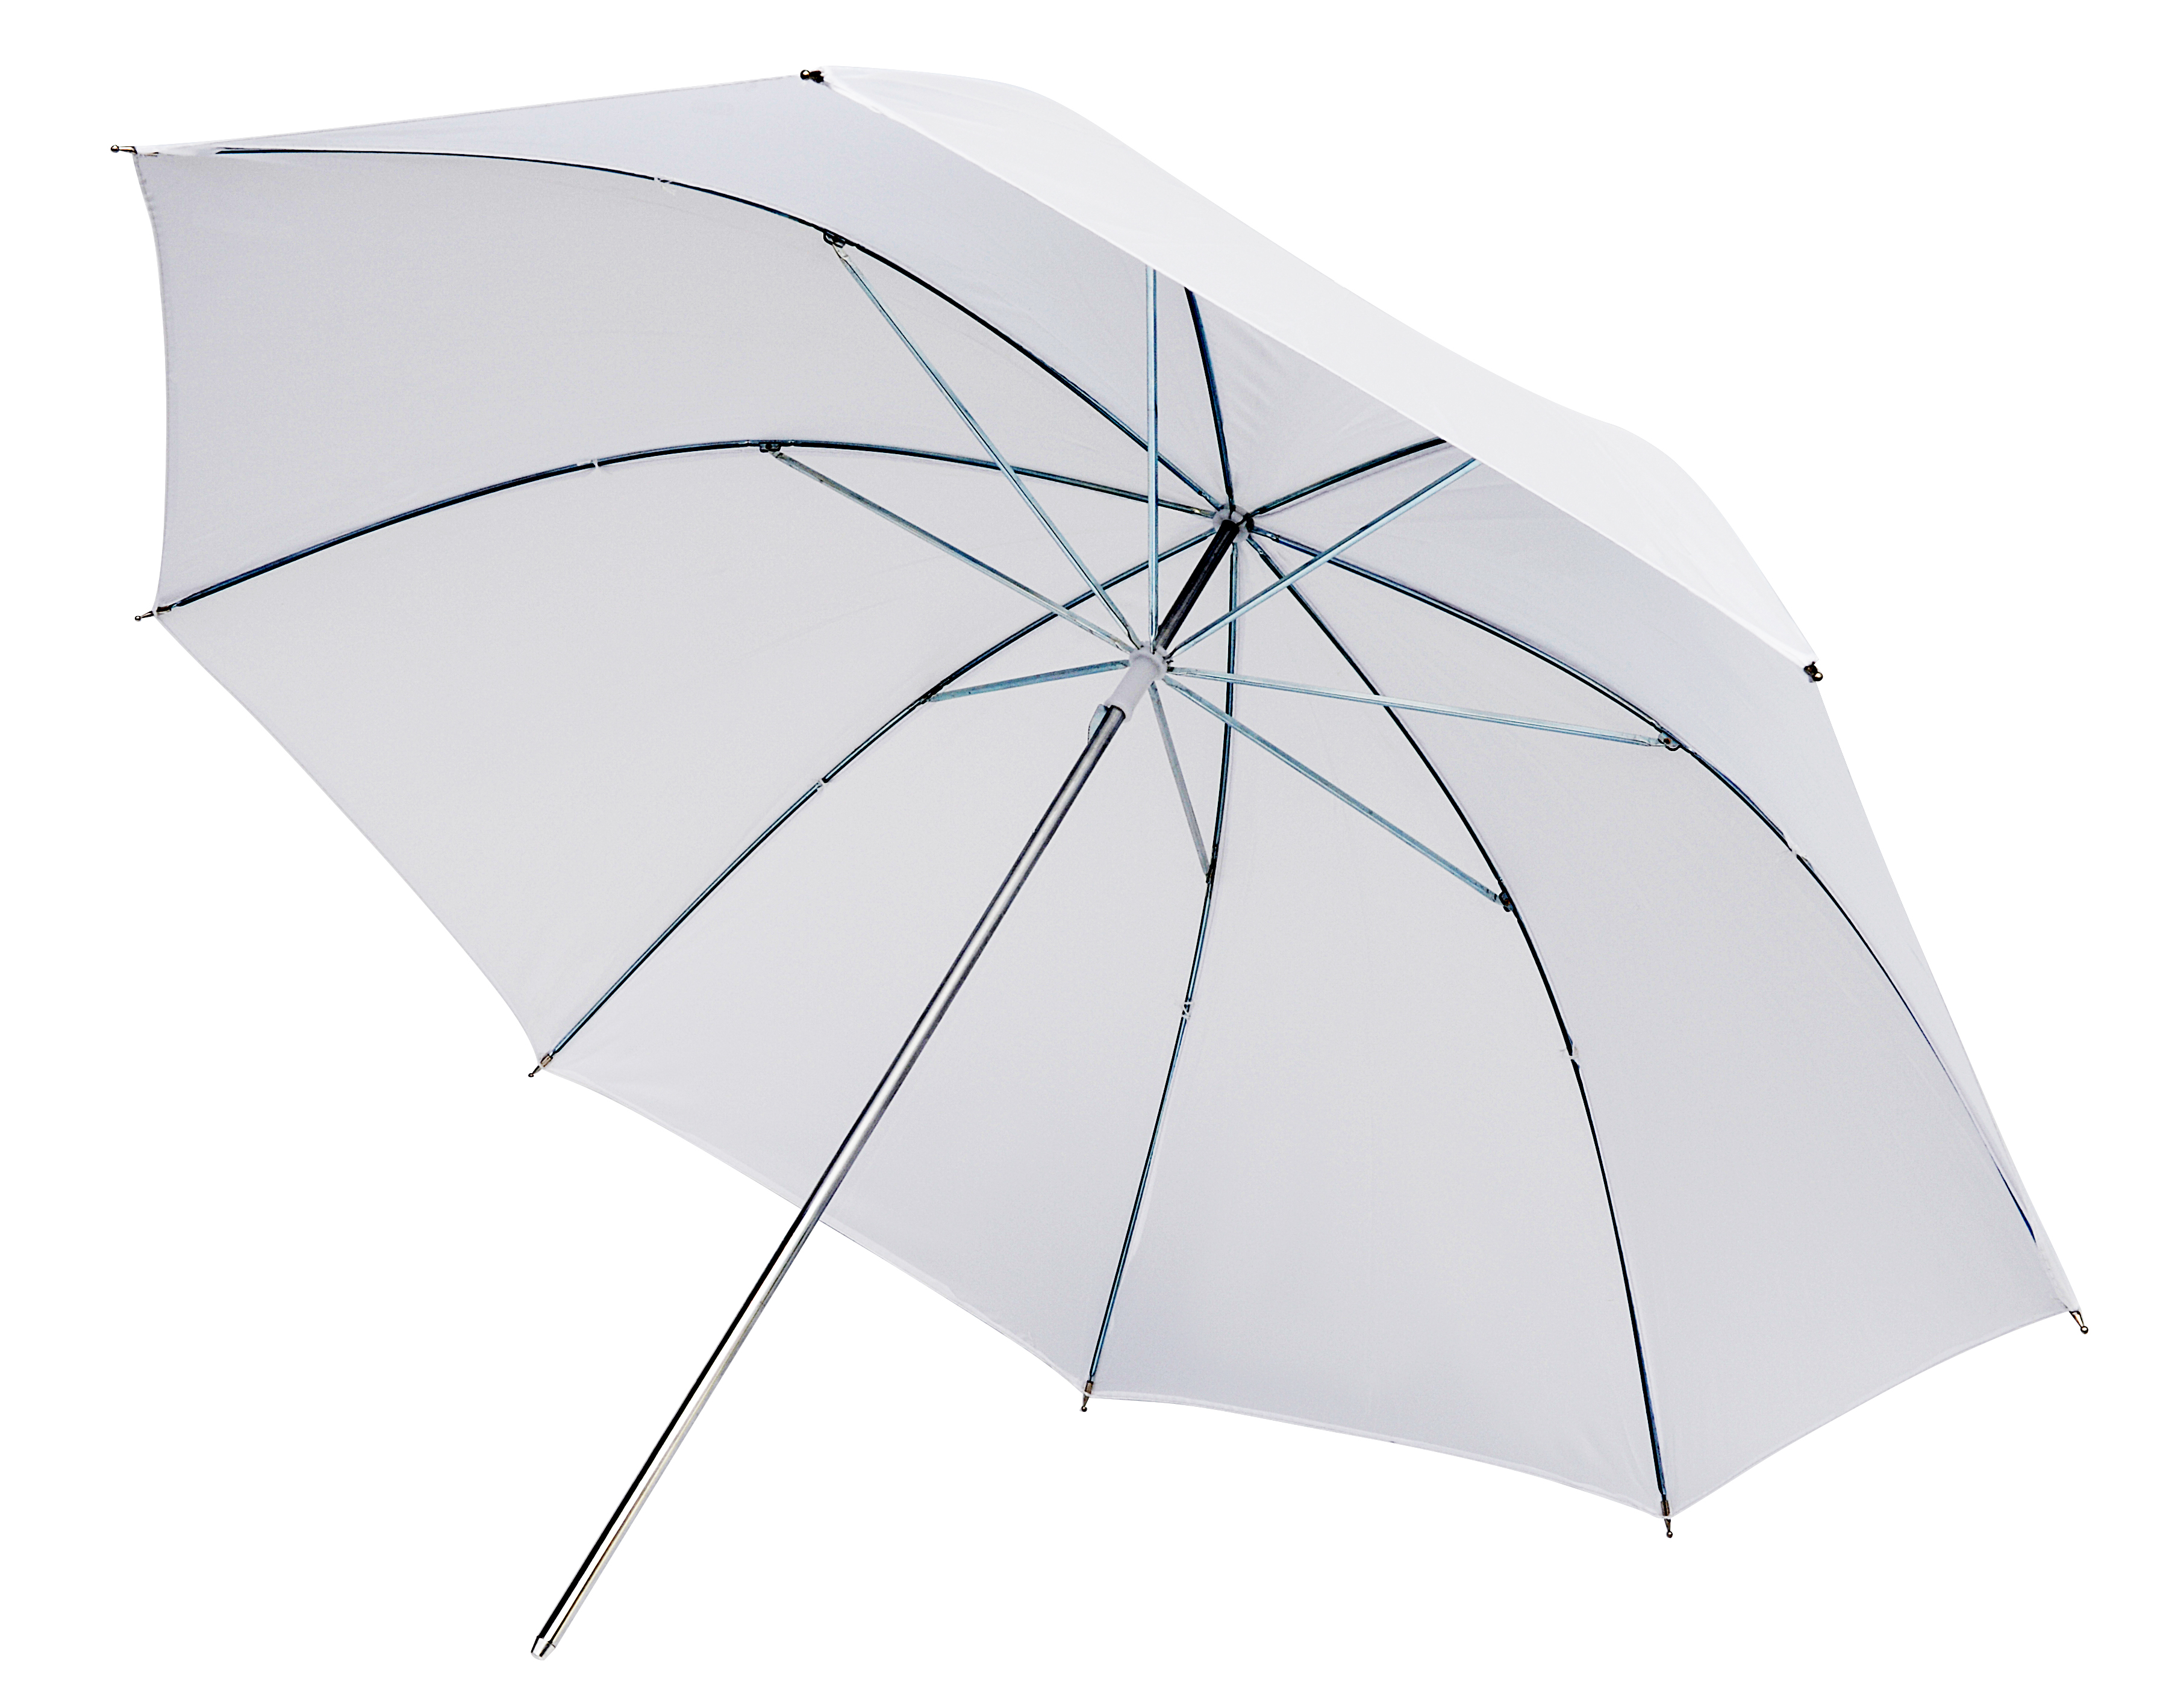 BRESSER SM-02 Translucent Umbrella white diffuse 84 cm - 3 pcs